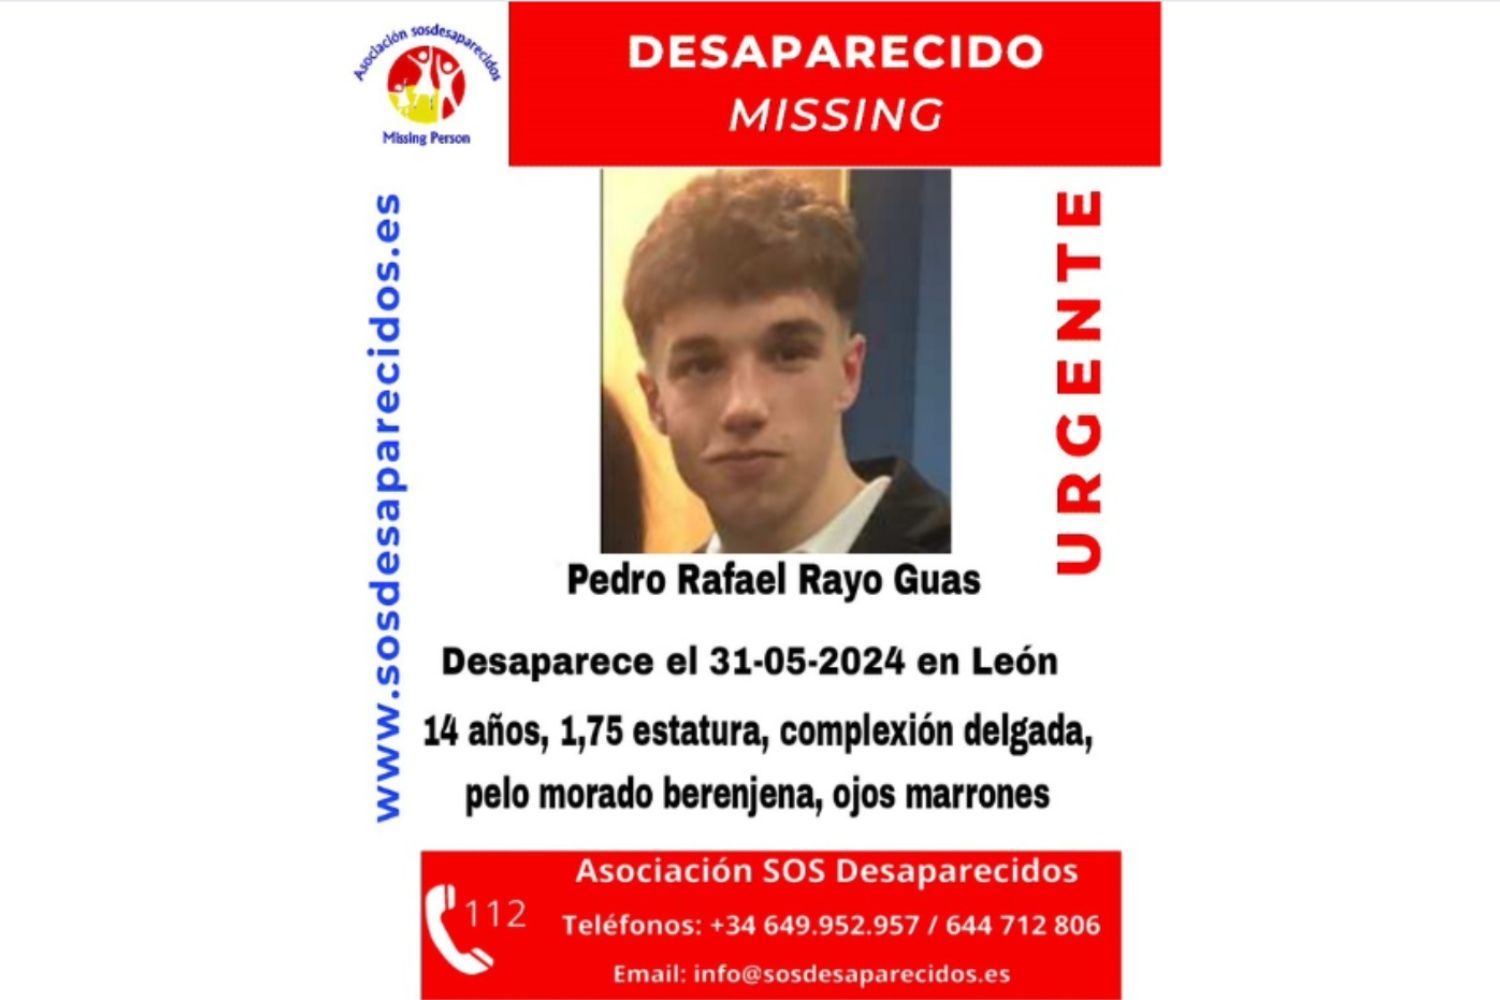 Desaparecido un joven de 14 años en León